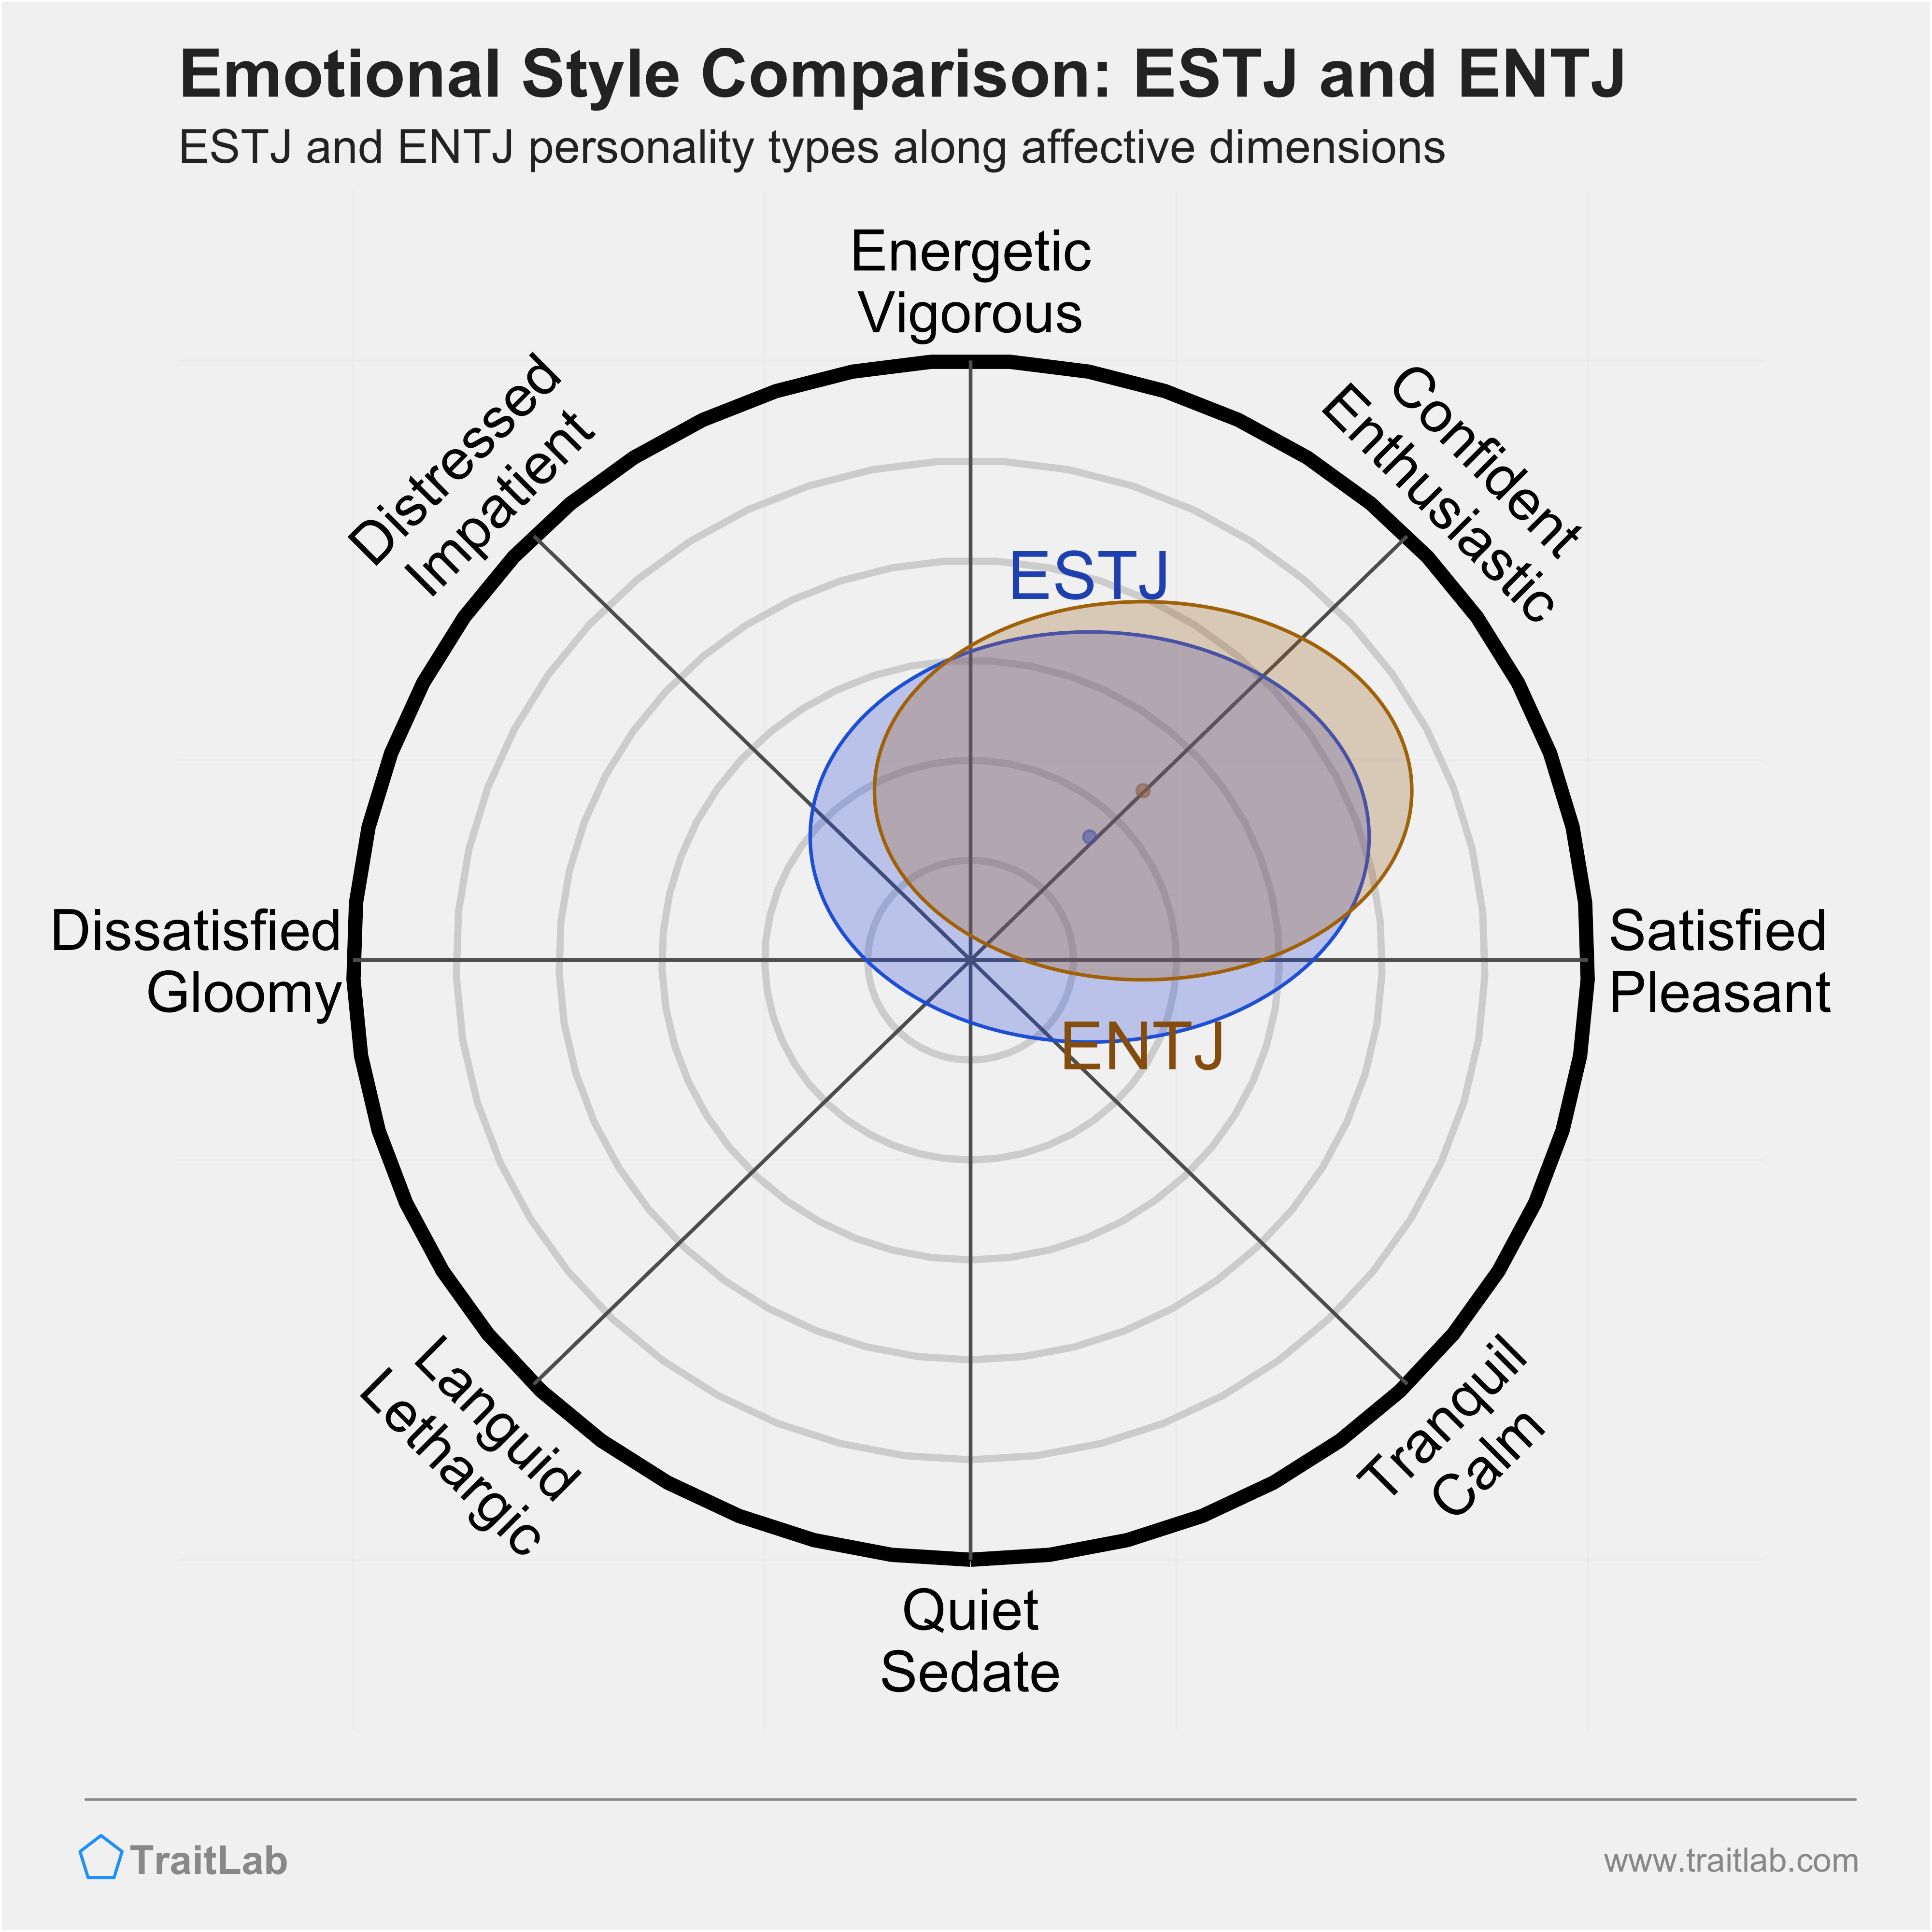 ESTJ and ENTJ comparison across emotional (affective) dimensions